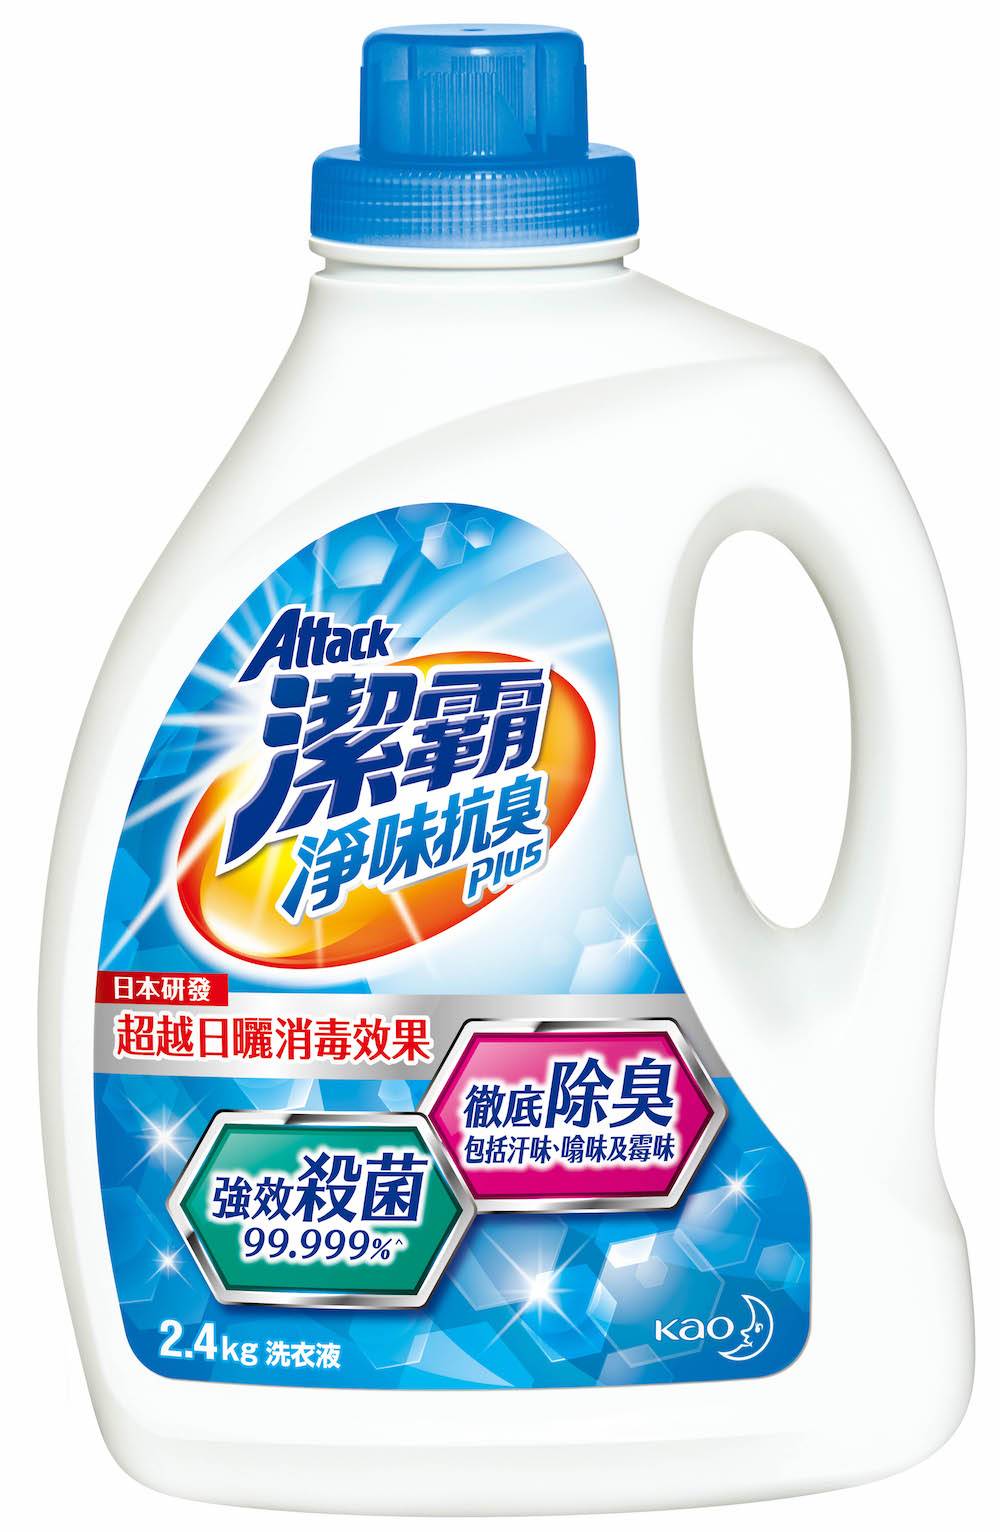 家居清潔 潔霸淨味抗臭Plus洗衣液獨有日本嶄新技術「雙效抗臭力 」，有效殺菌及抗菌達99.999%，同時抑制細菌滋生，徹底去除衣物不同臭味。